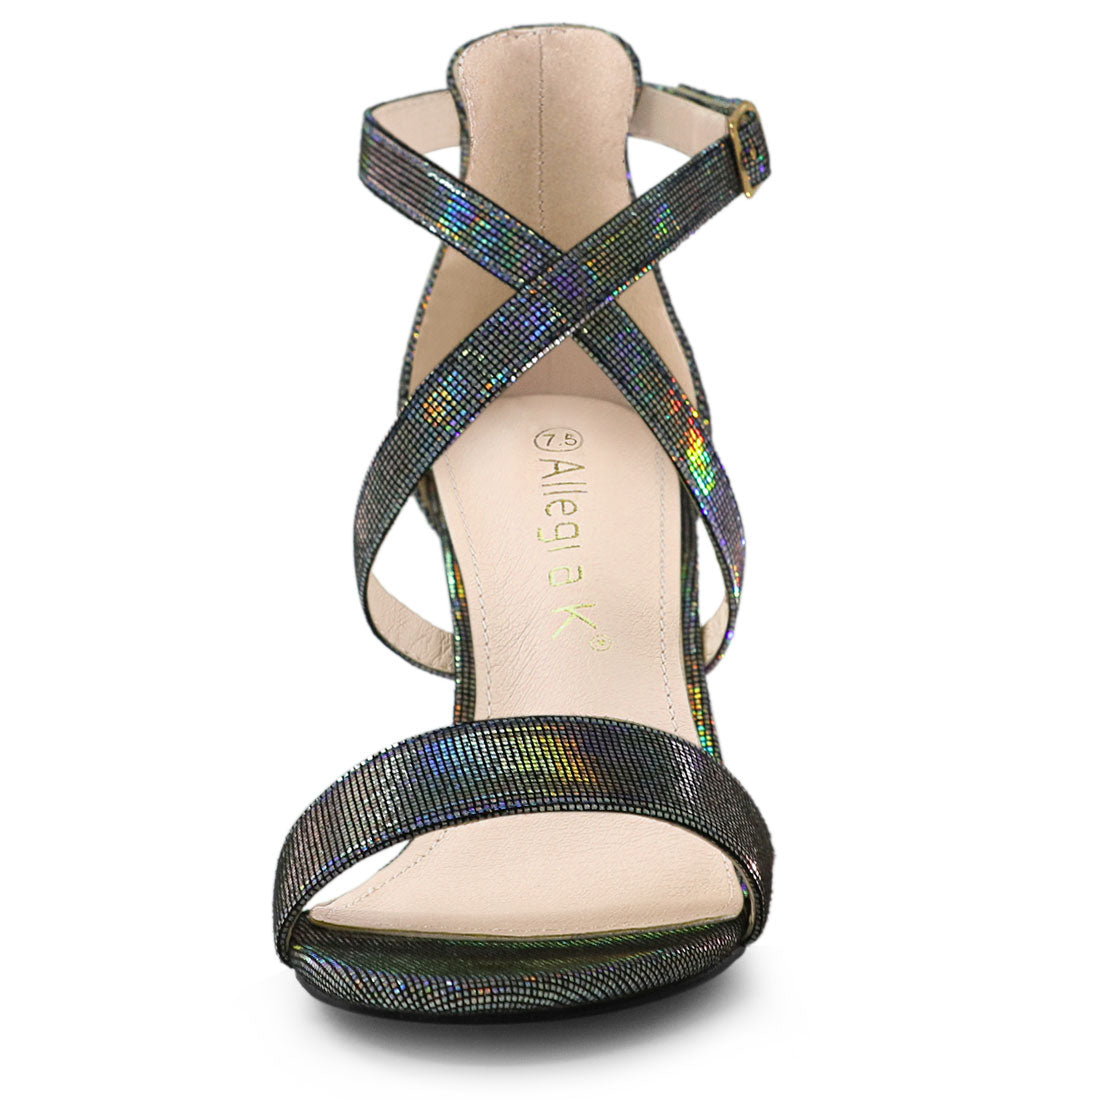 Allegra K Colorful Cross Strappy Adjustable Buckle Block Heel Sandals